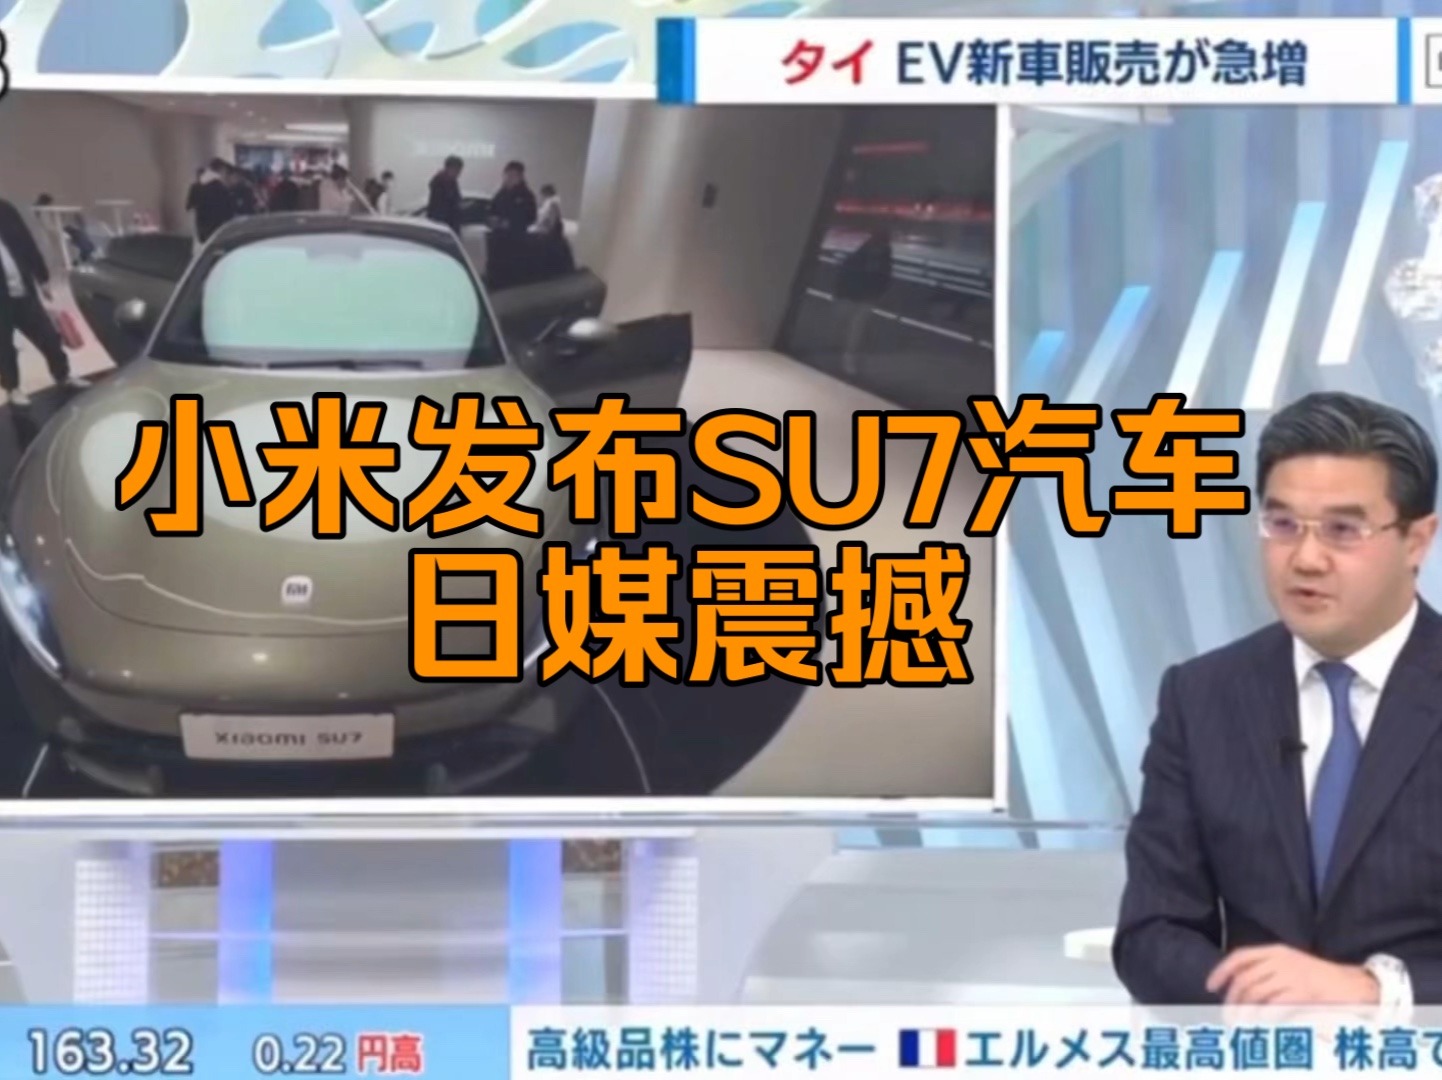 中文字幕～小米昨晚发布SU7电动汽车、日媒表示就像2007年苹果发布IPHON一样震撼世界。